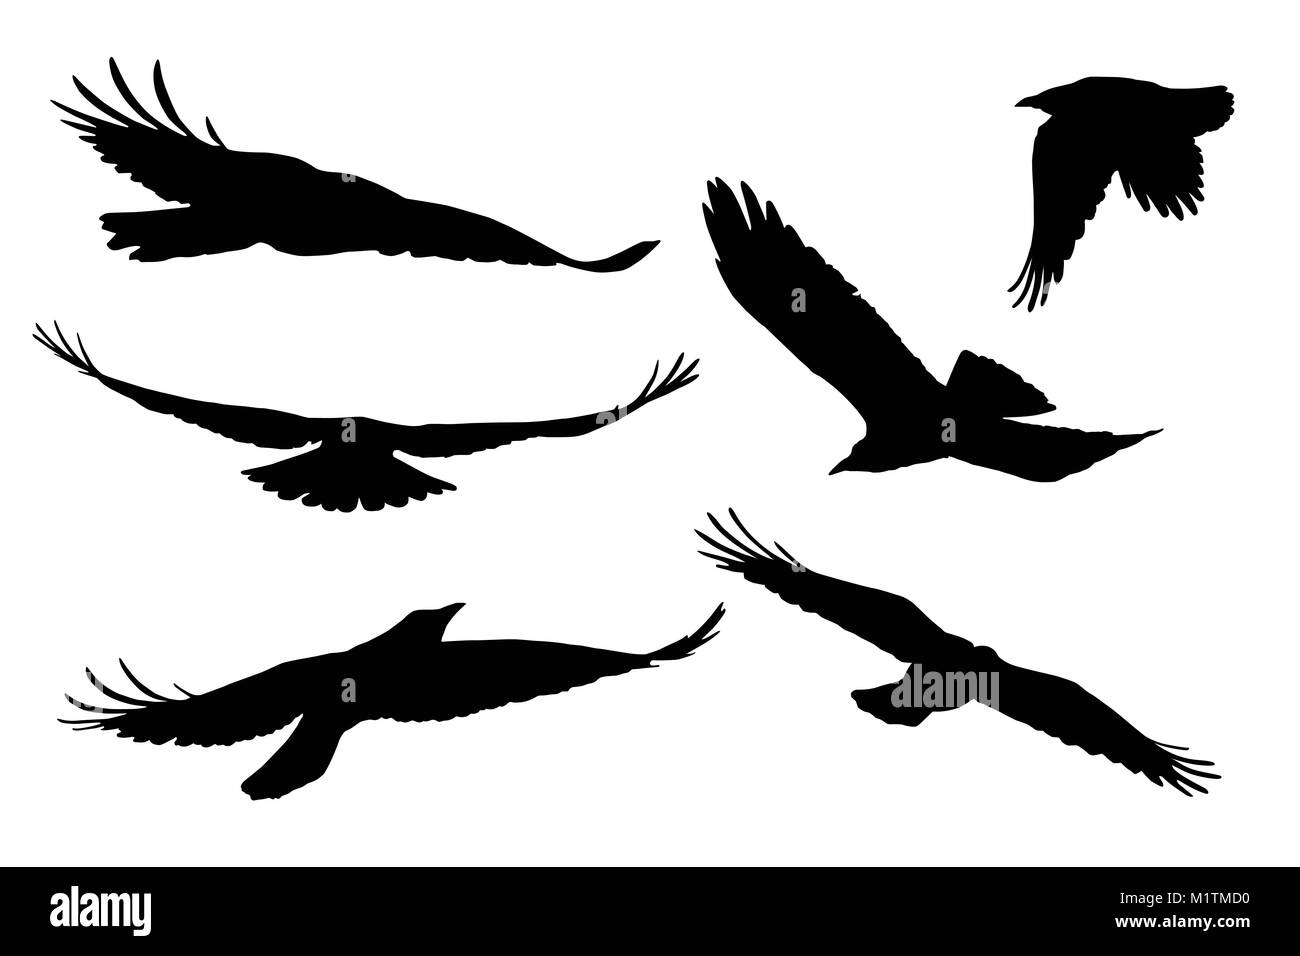 Jeu de silhouettes vecteur réaliste de flying birds, isolé sur fond blanc Illustration de Vecteur